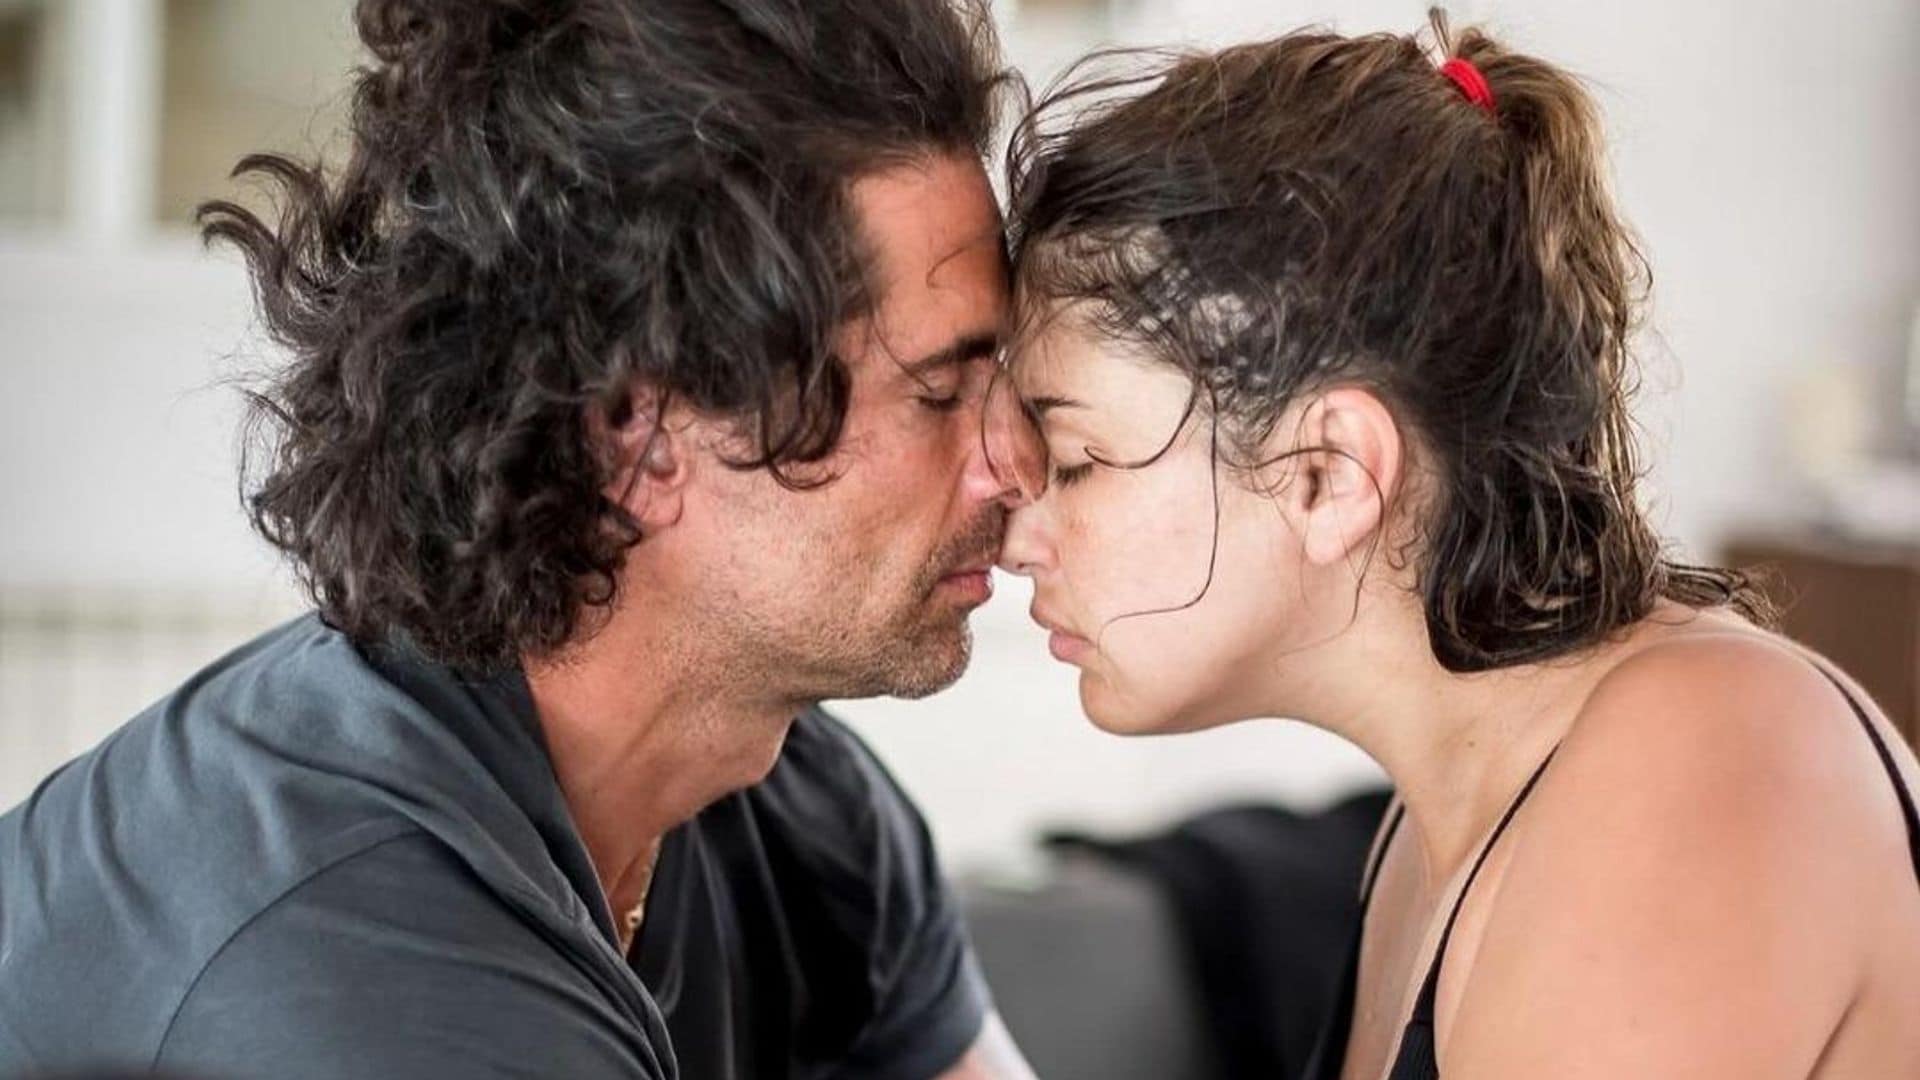 Michelle Renaud y Matías Novoa, actores de 'La herencia', dan la bienvenida a su primer hijo en común